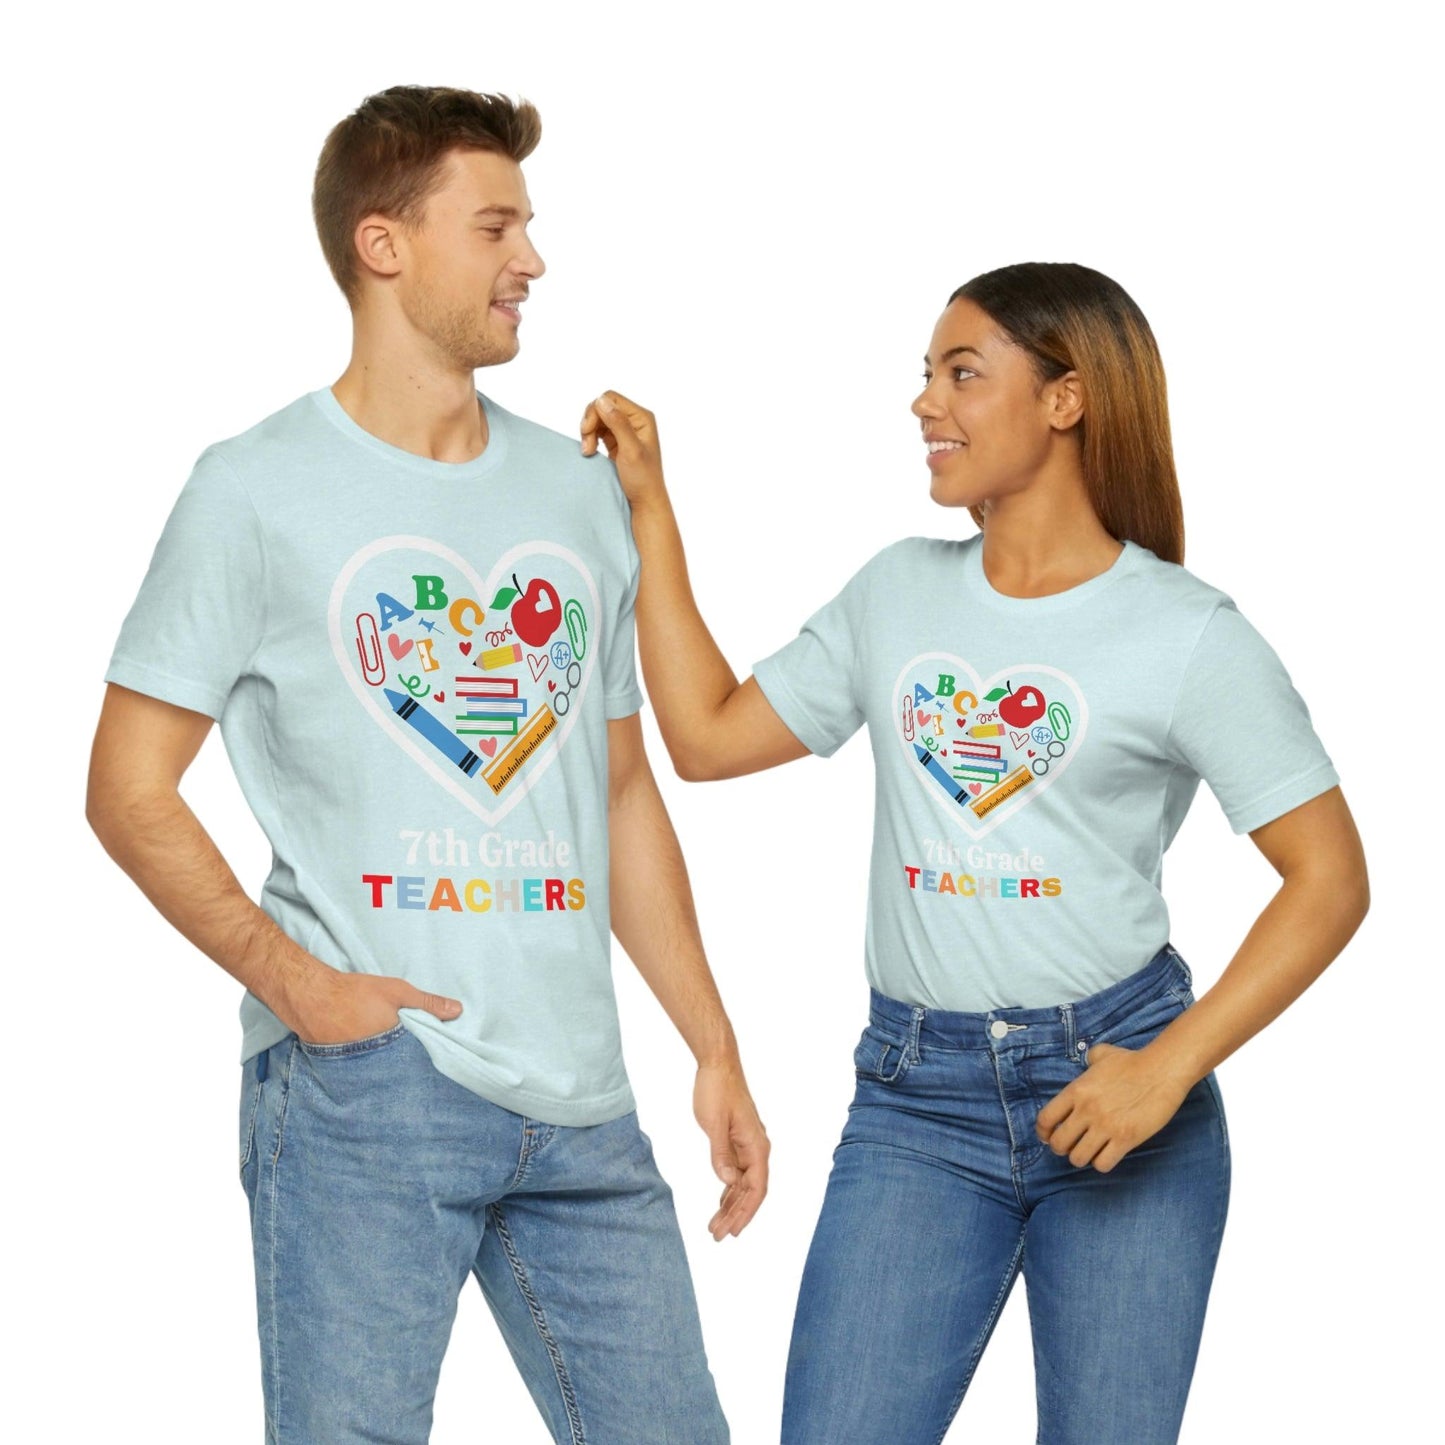 Love 7th Grade Teacher Shirt - Teacher Appreciation Shirt - Gift for Teachers - 7th Grade shirt